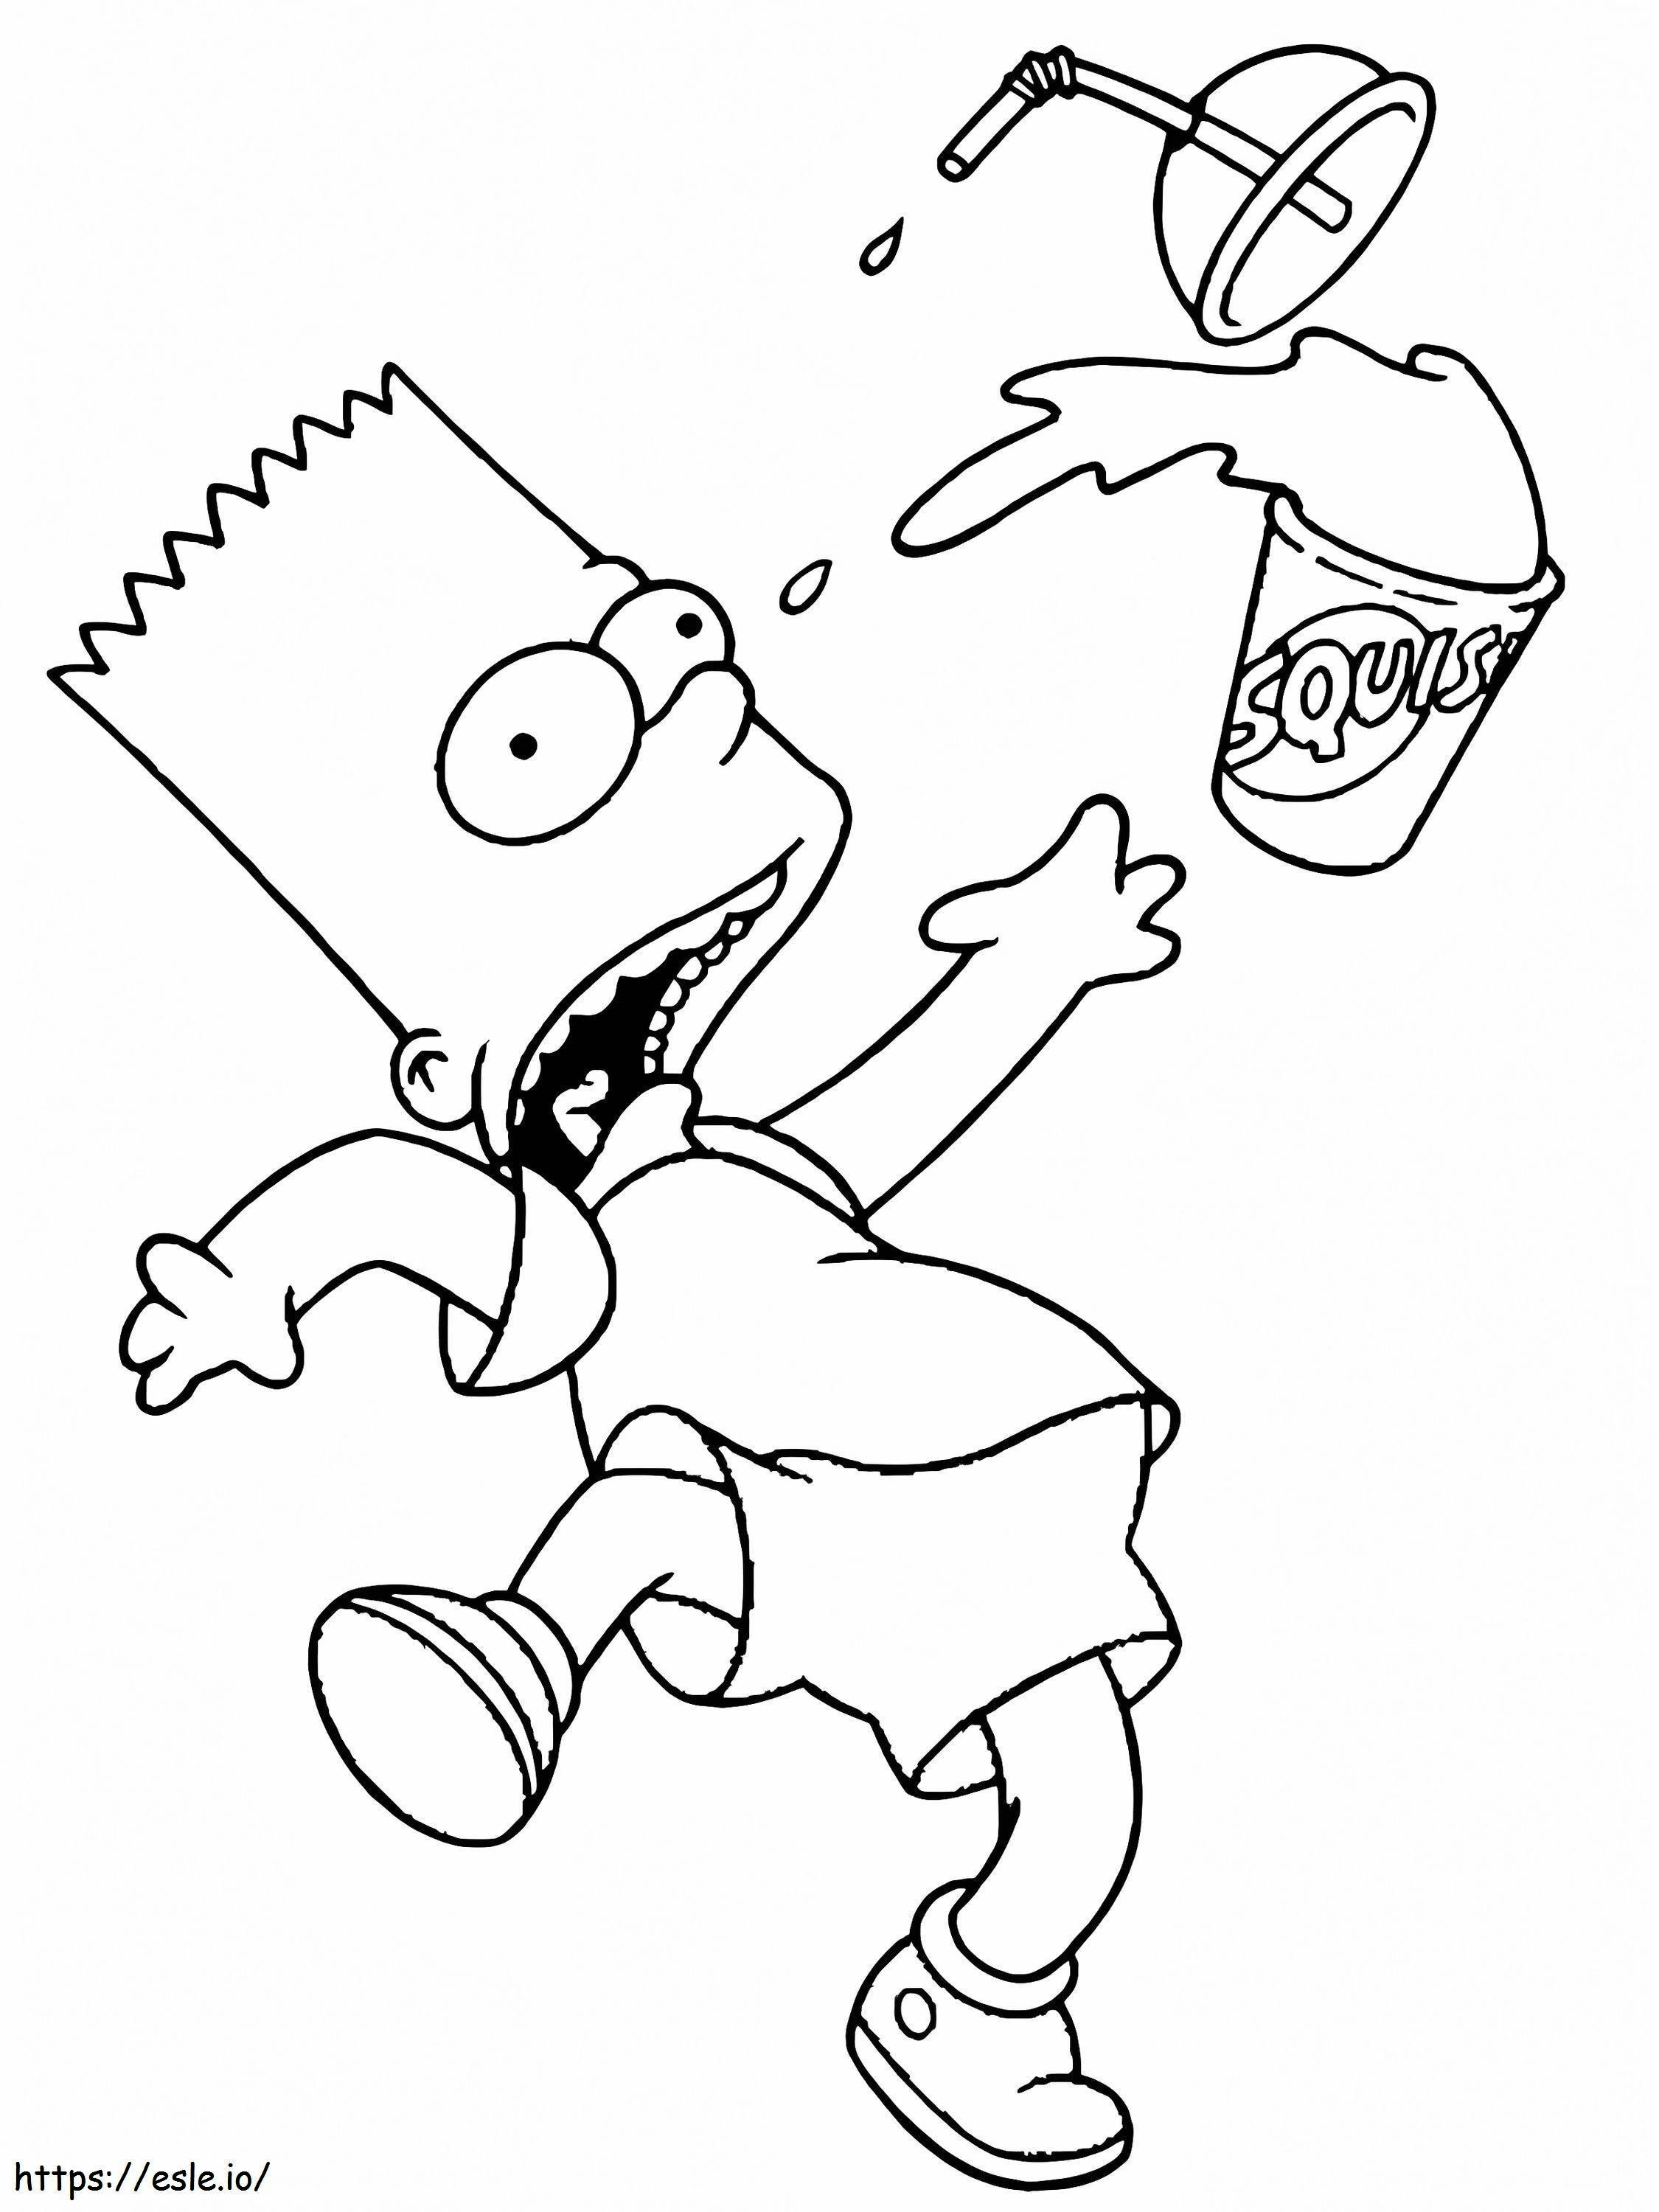 Coloriage Peur de Bart Simpson à imprimer dessin